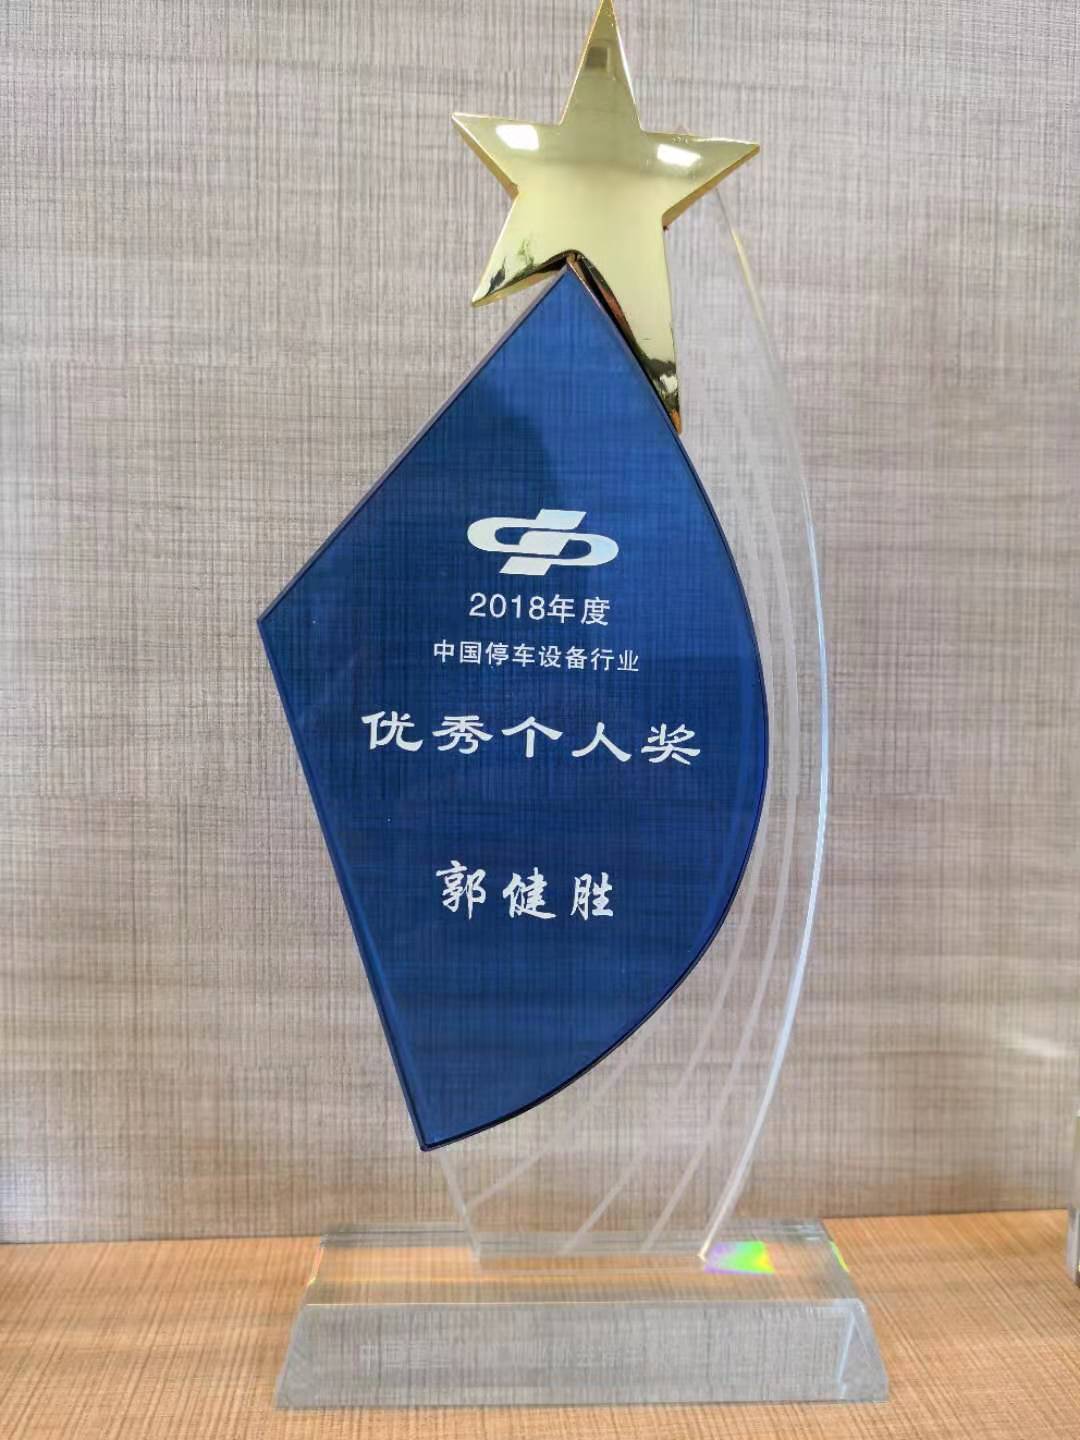 2018年度中国停车设备行业优秀个人奖